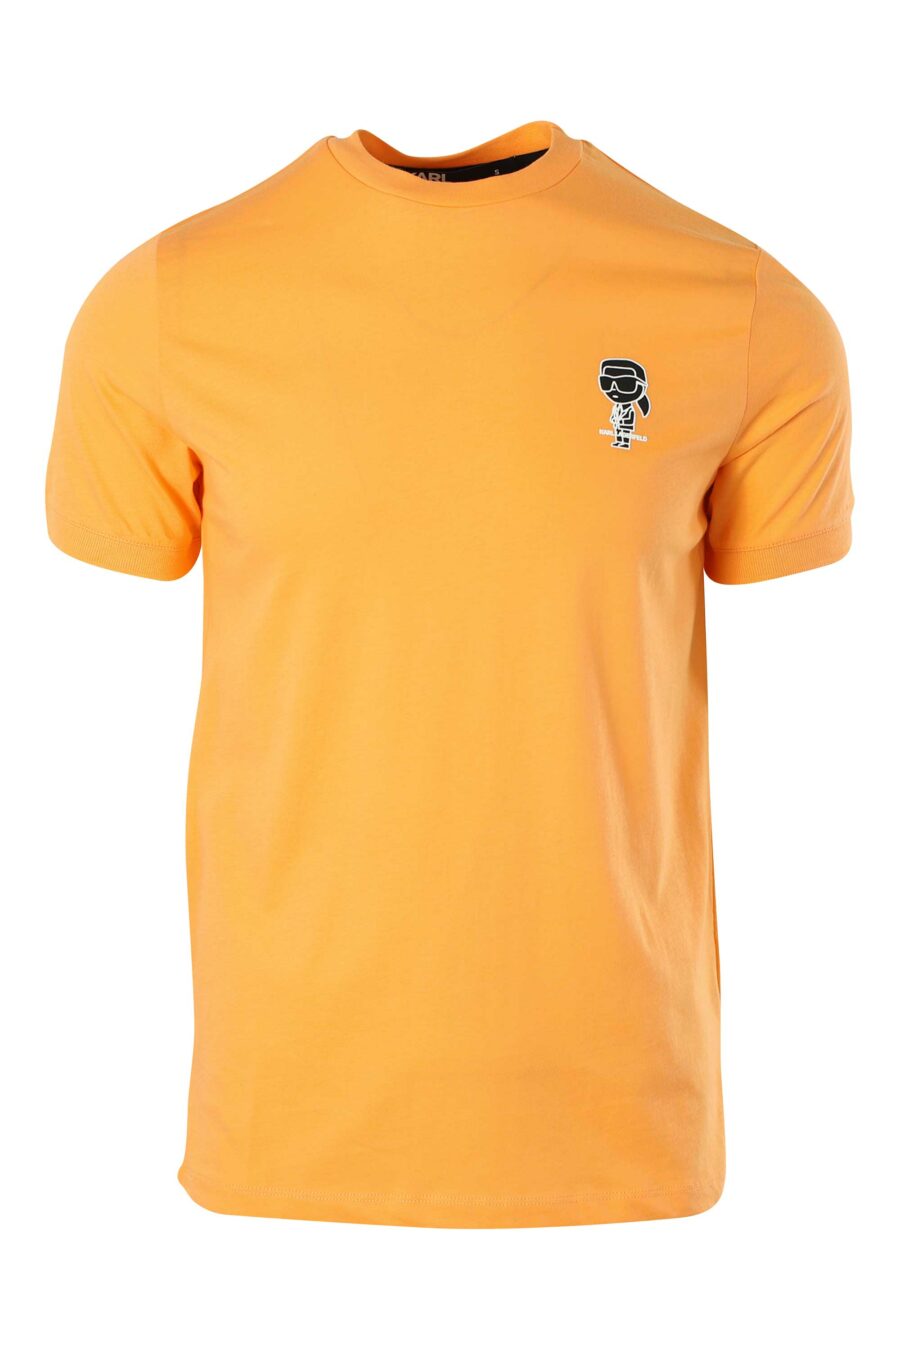 Camiseta naranja con minilogo blanco - 014769666